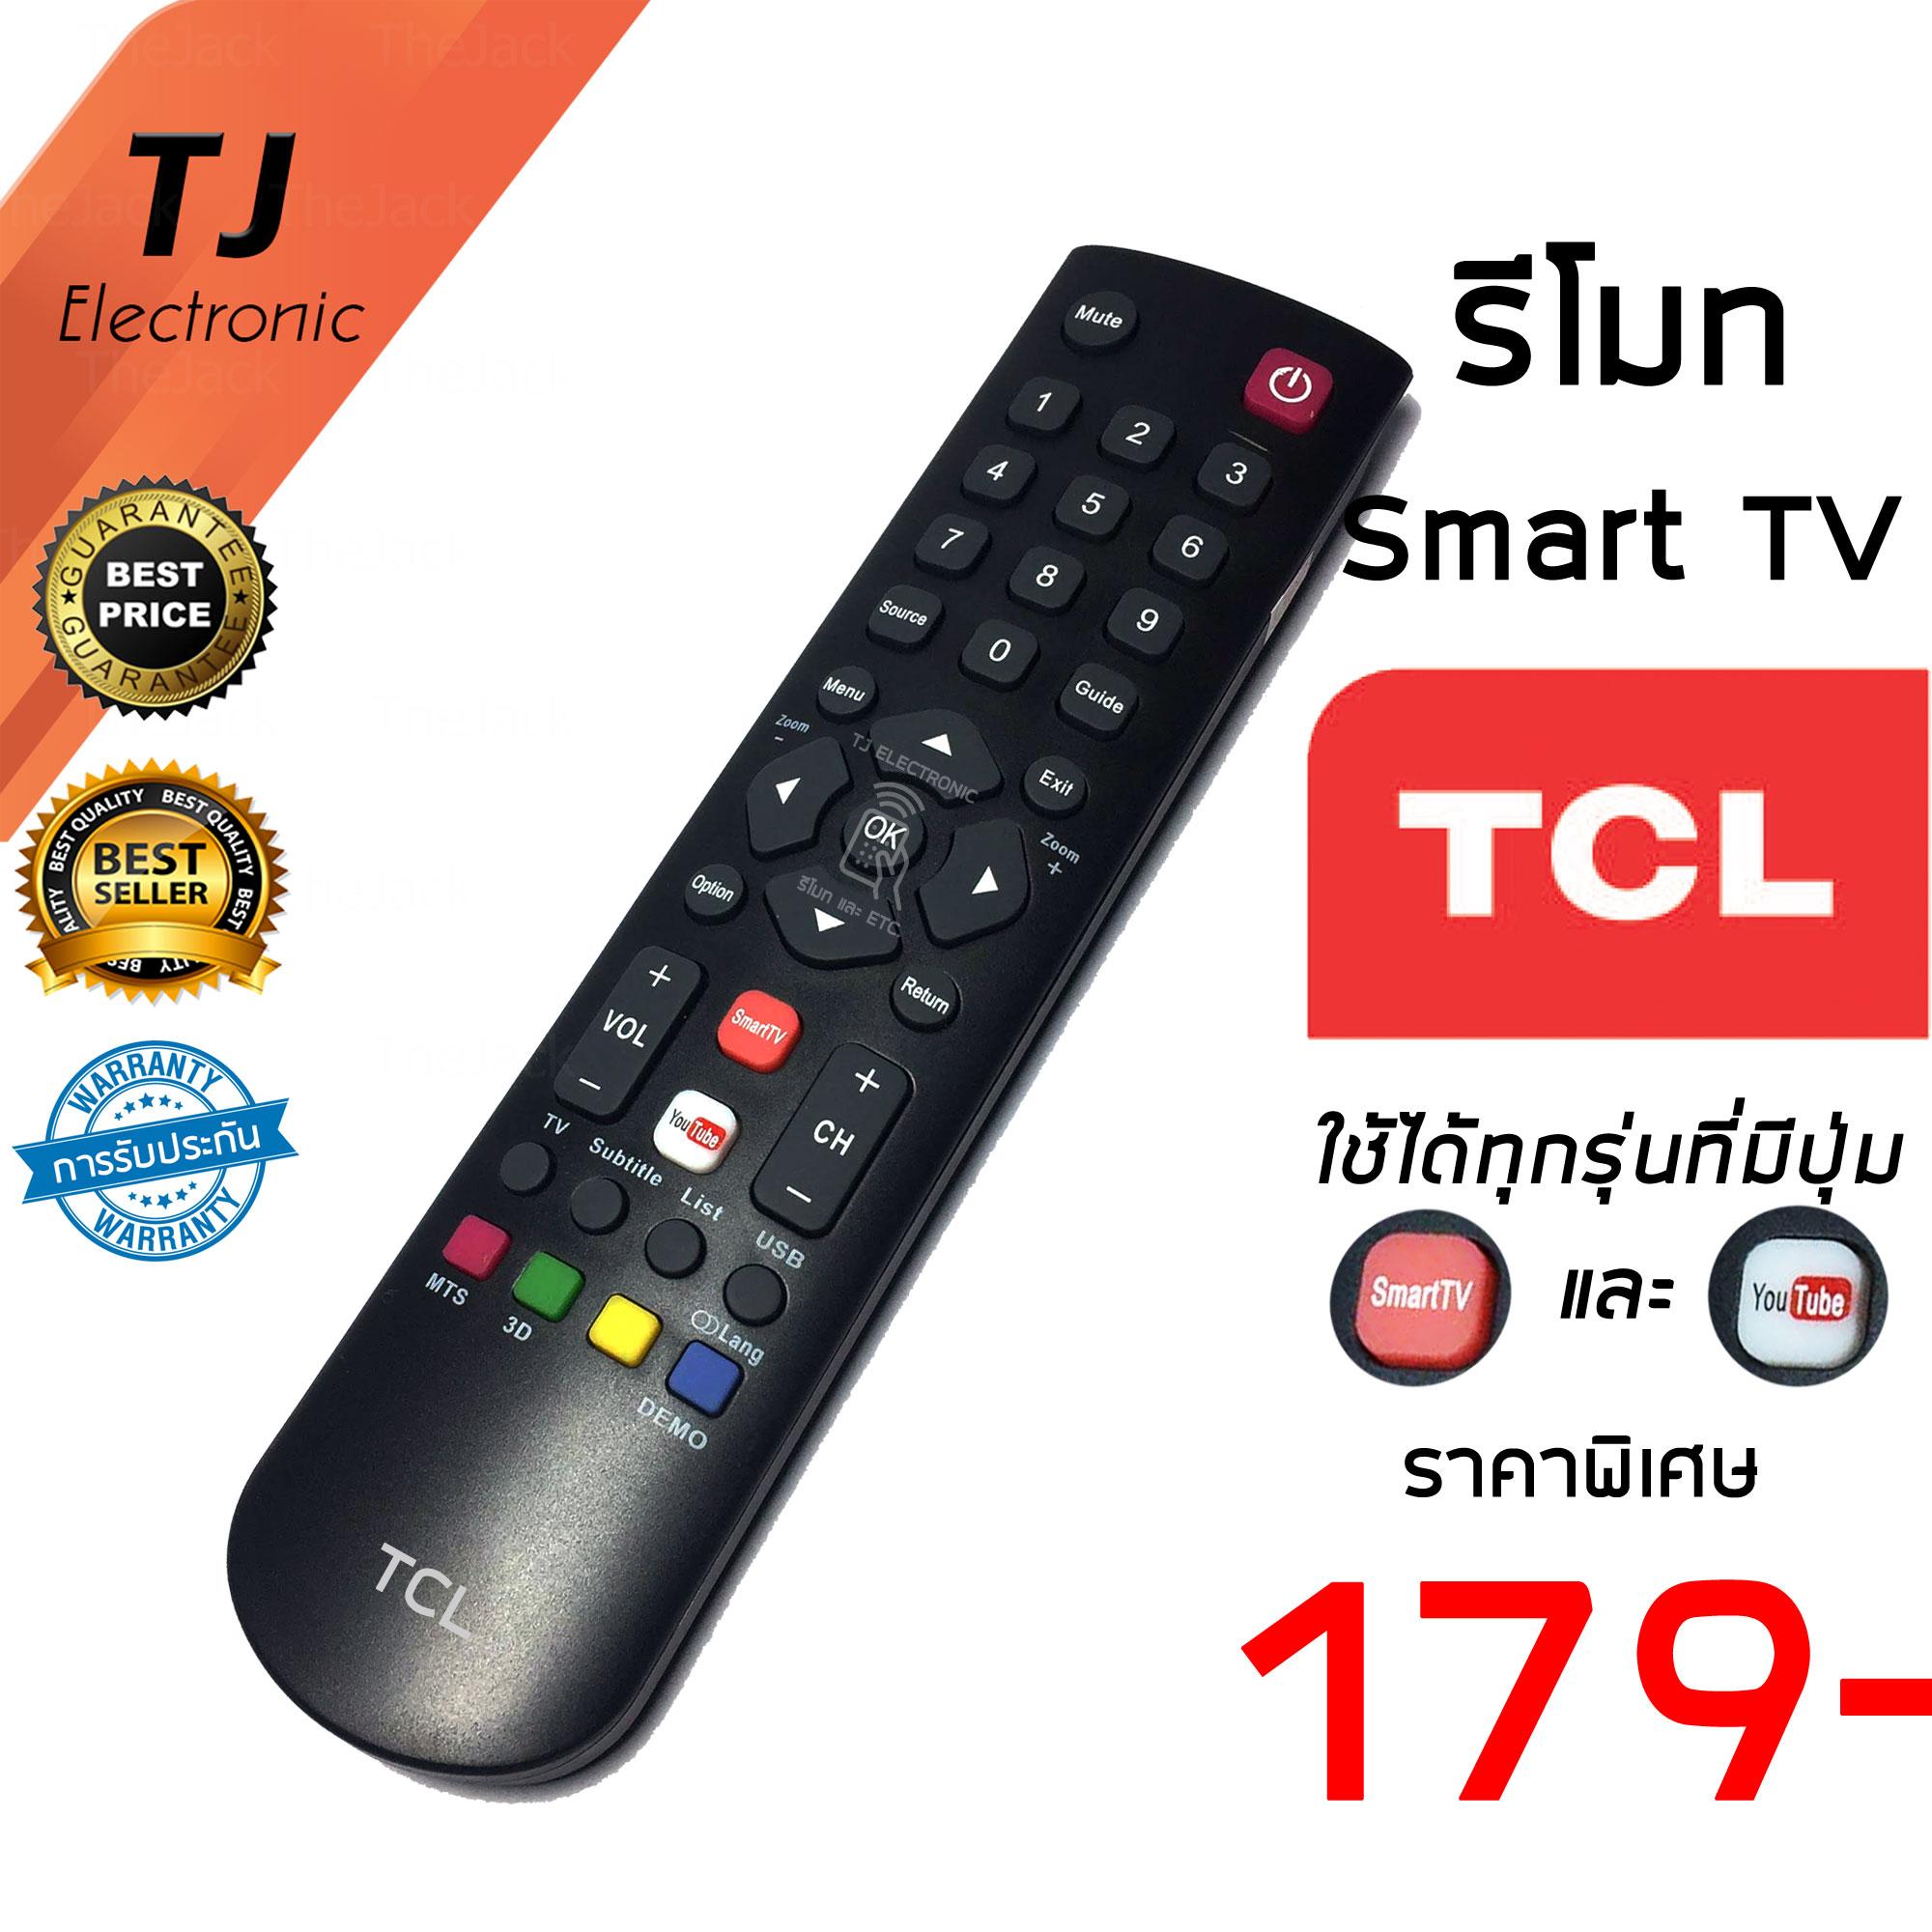 รีโมท TCL ทีซีแอล รุ่น สมาร์ททีวี มีฟังก์ชั่น Smart TV & YouTUBE ใช้กันได้ทุกรุ่น LED40S3800 / RC 200 (Remote TCL Smart TV & YouTUBE Function)